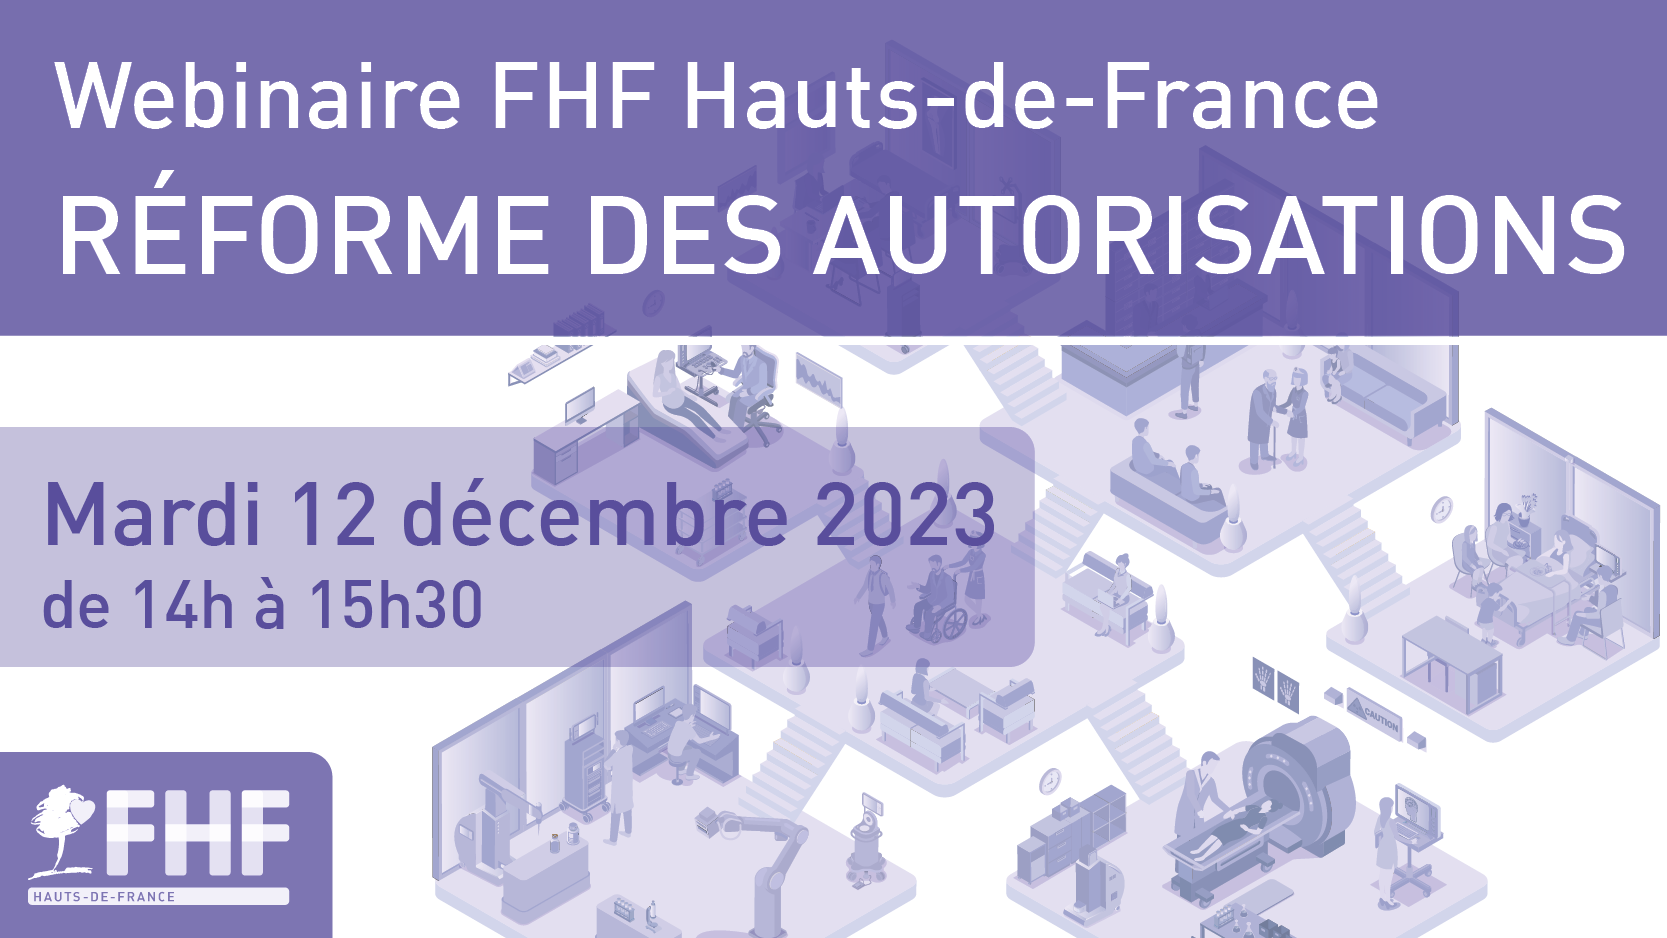 Webinaire FHF HDF Réforme des autorisations du 12 décembre 2023